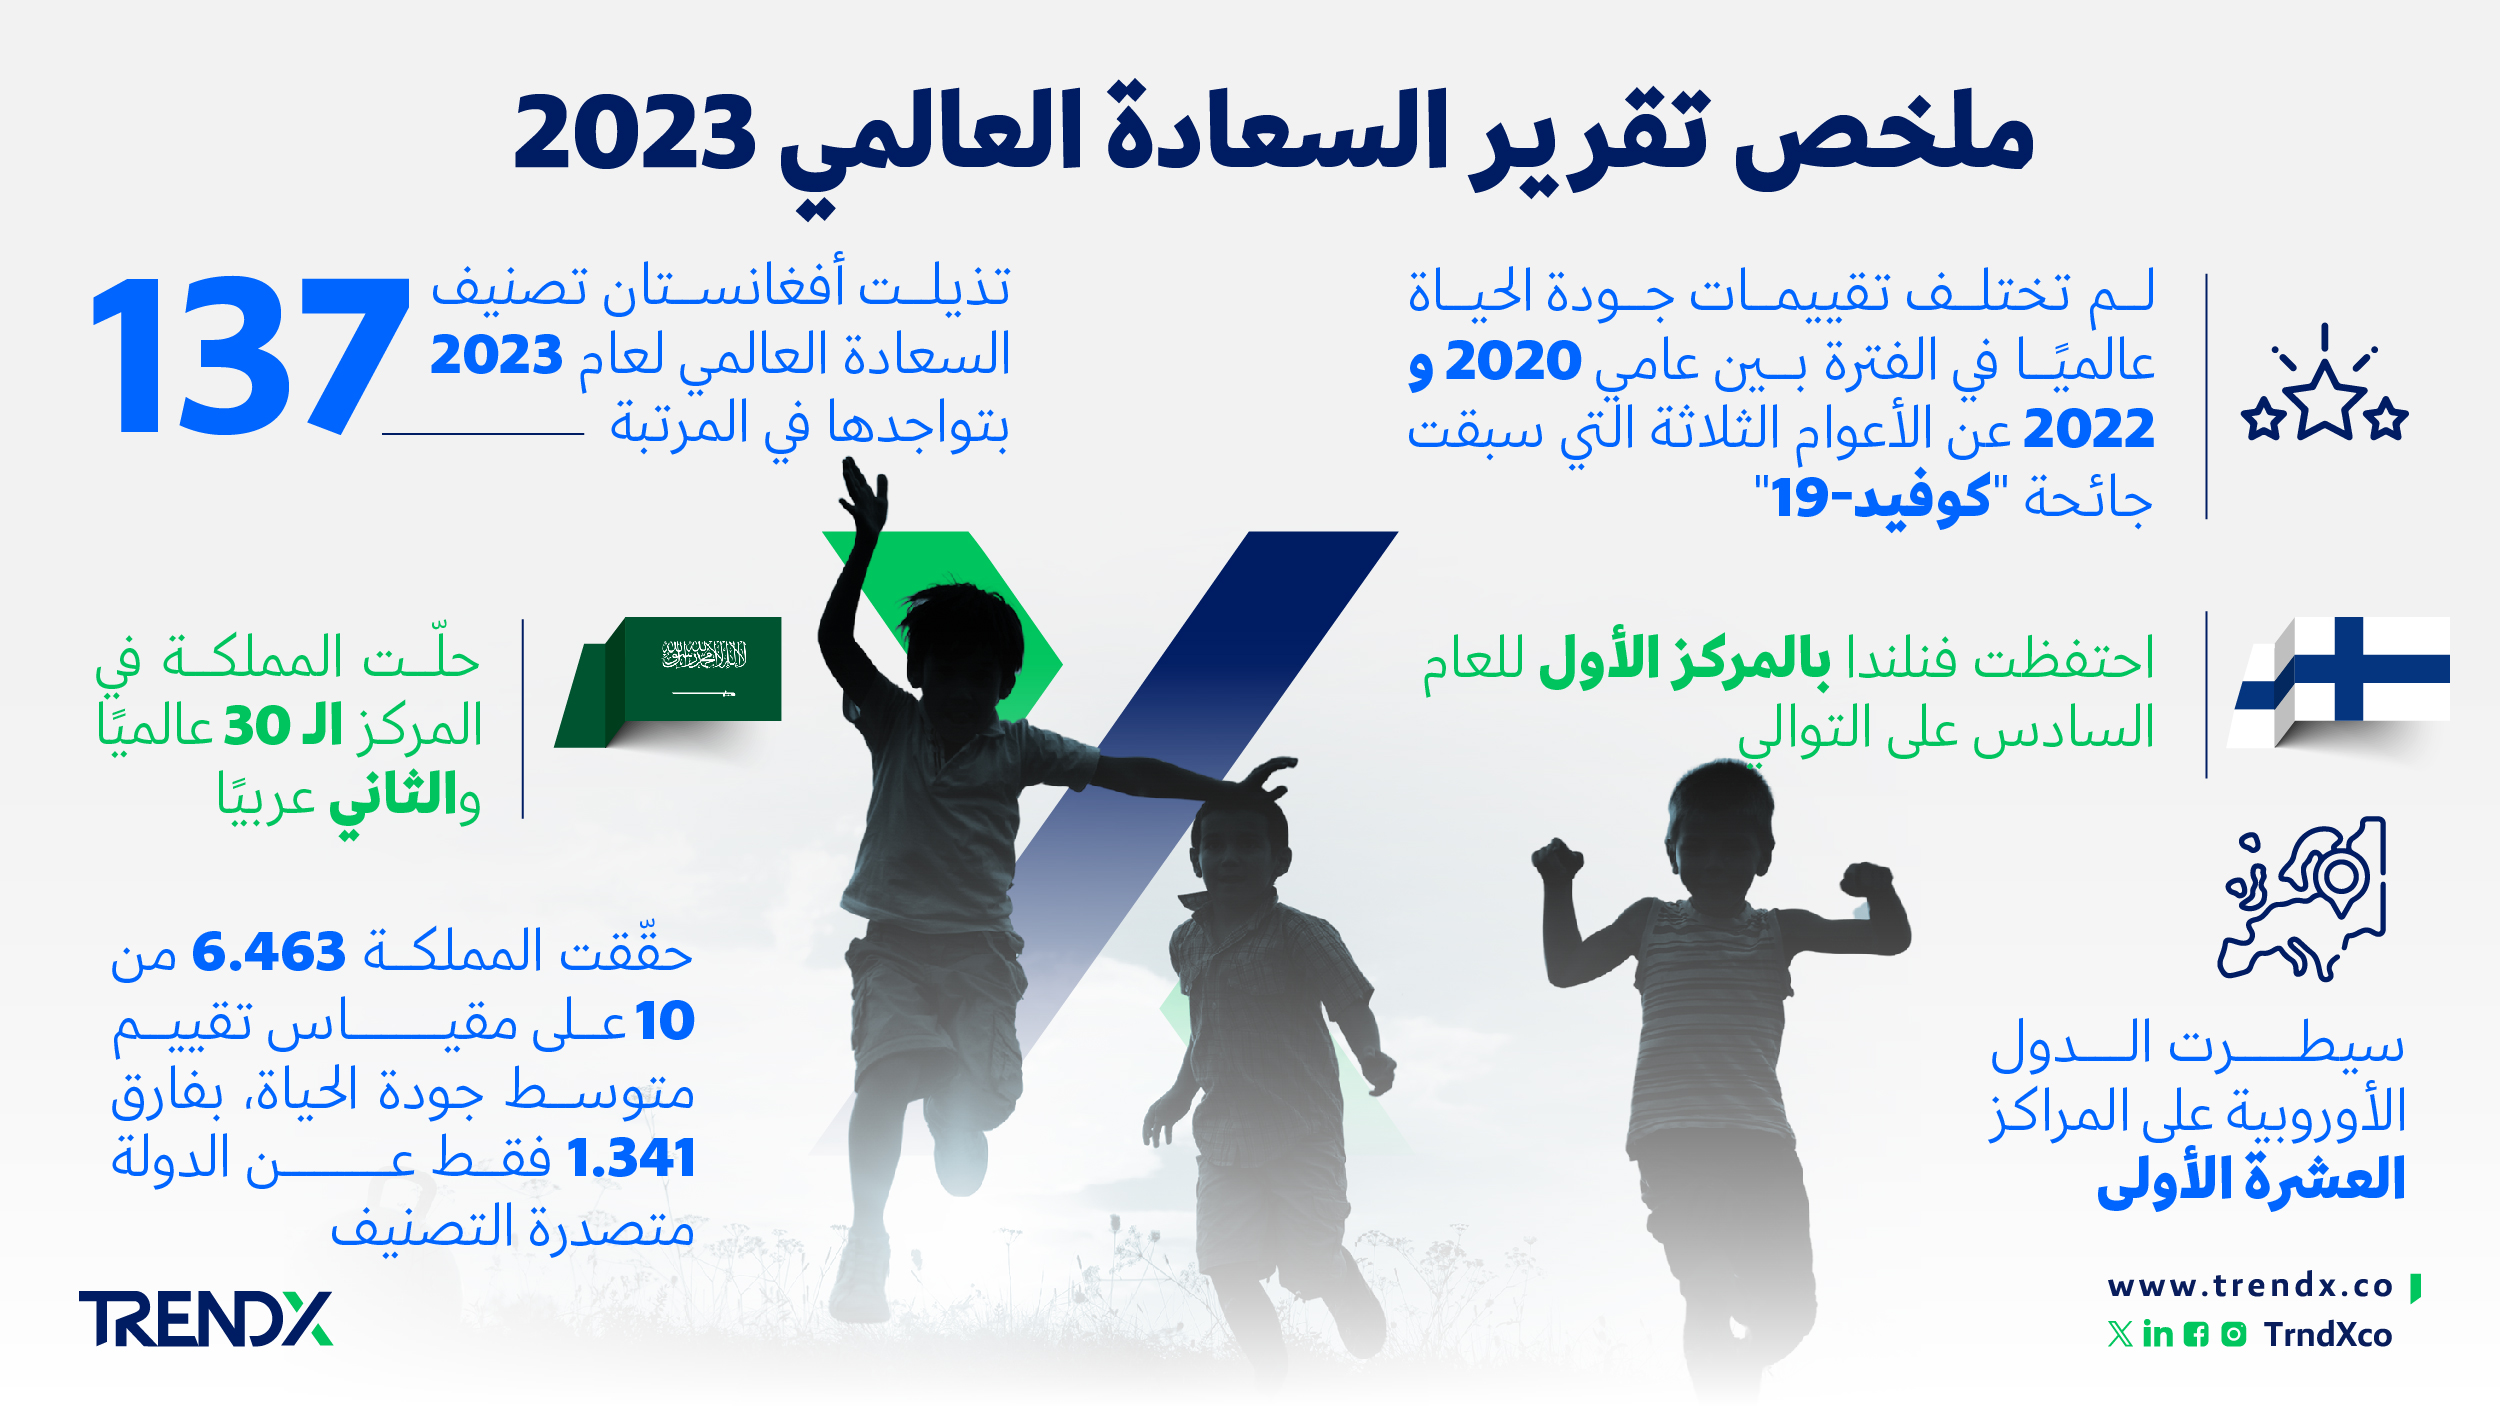 ملخص تقرير السعادة العالمي 2023 ثروات السعوديين في الفترة من عام 2000 إلى 2022 01